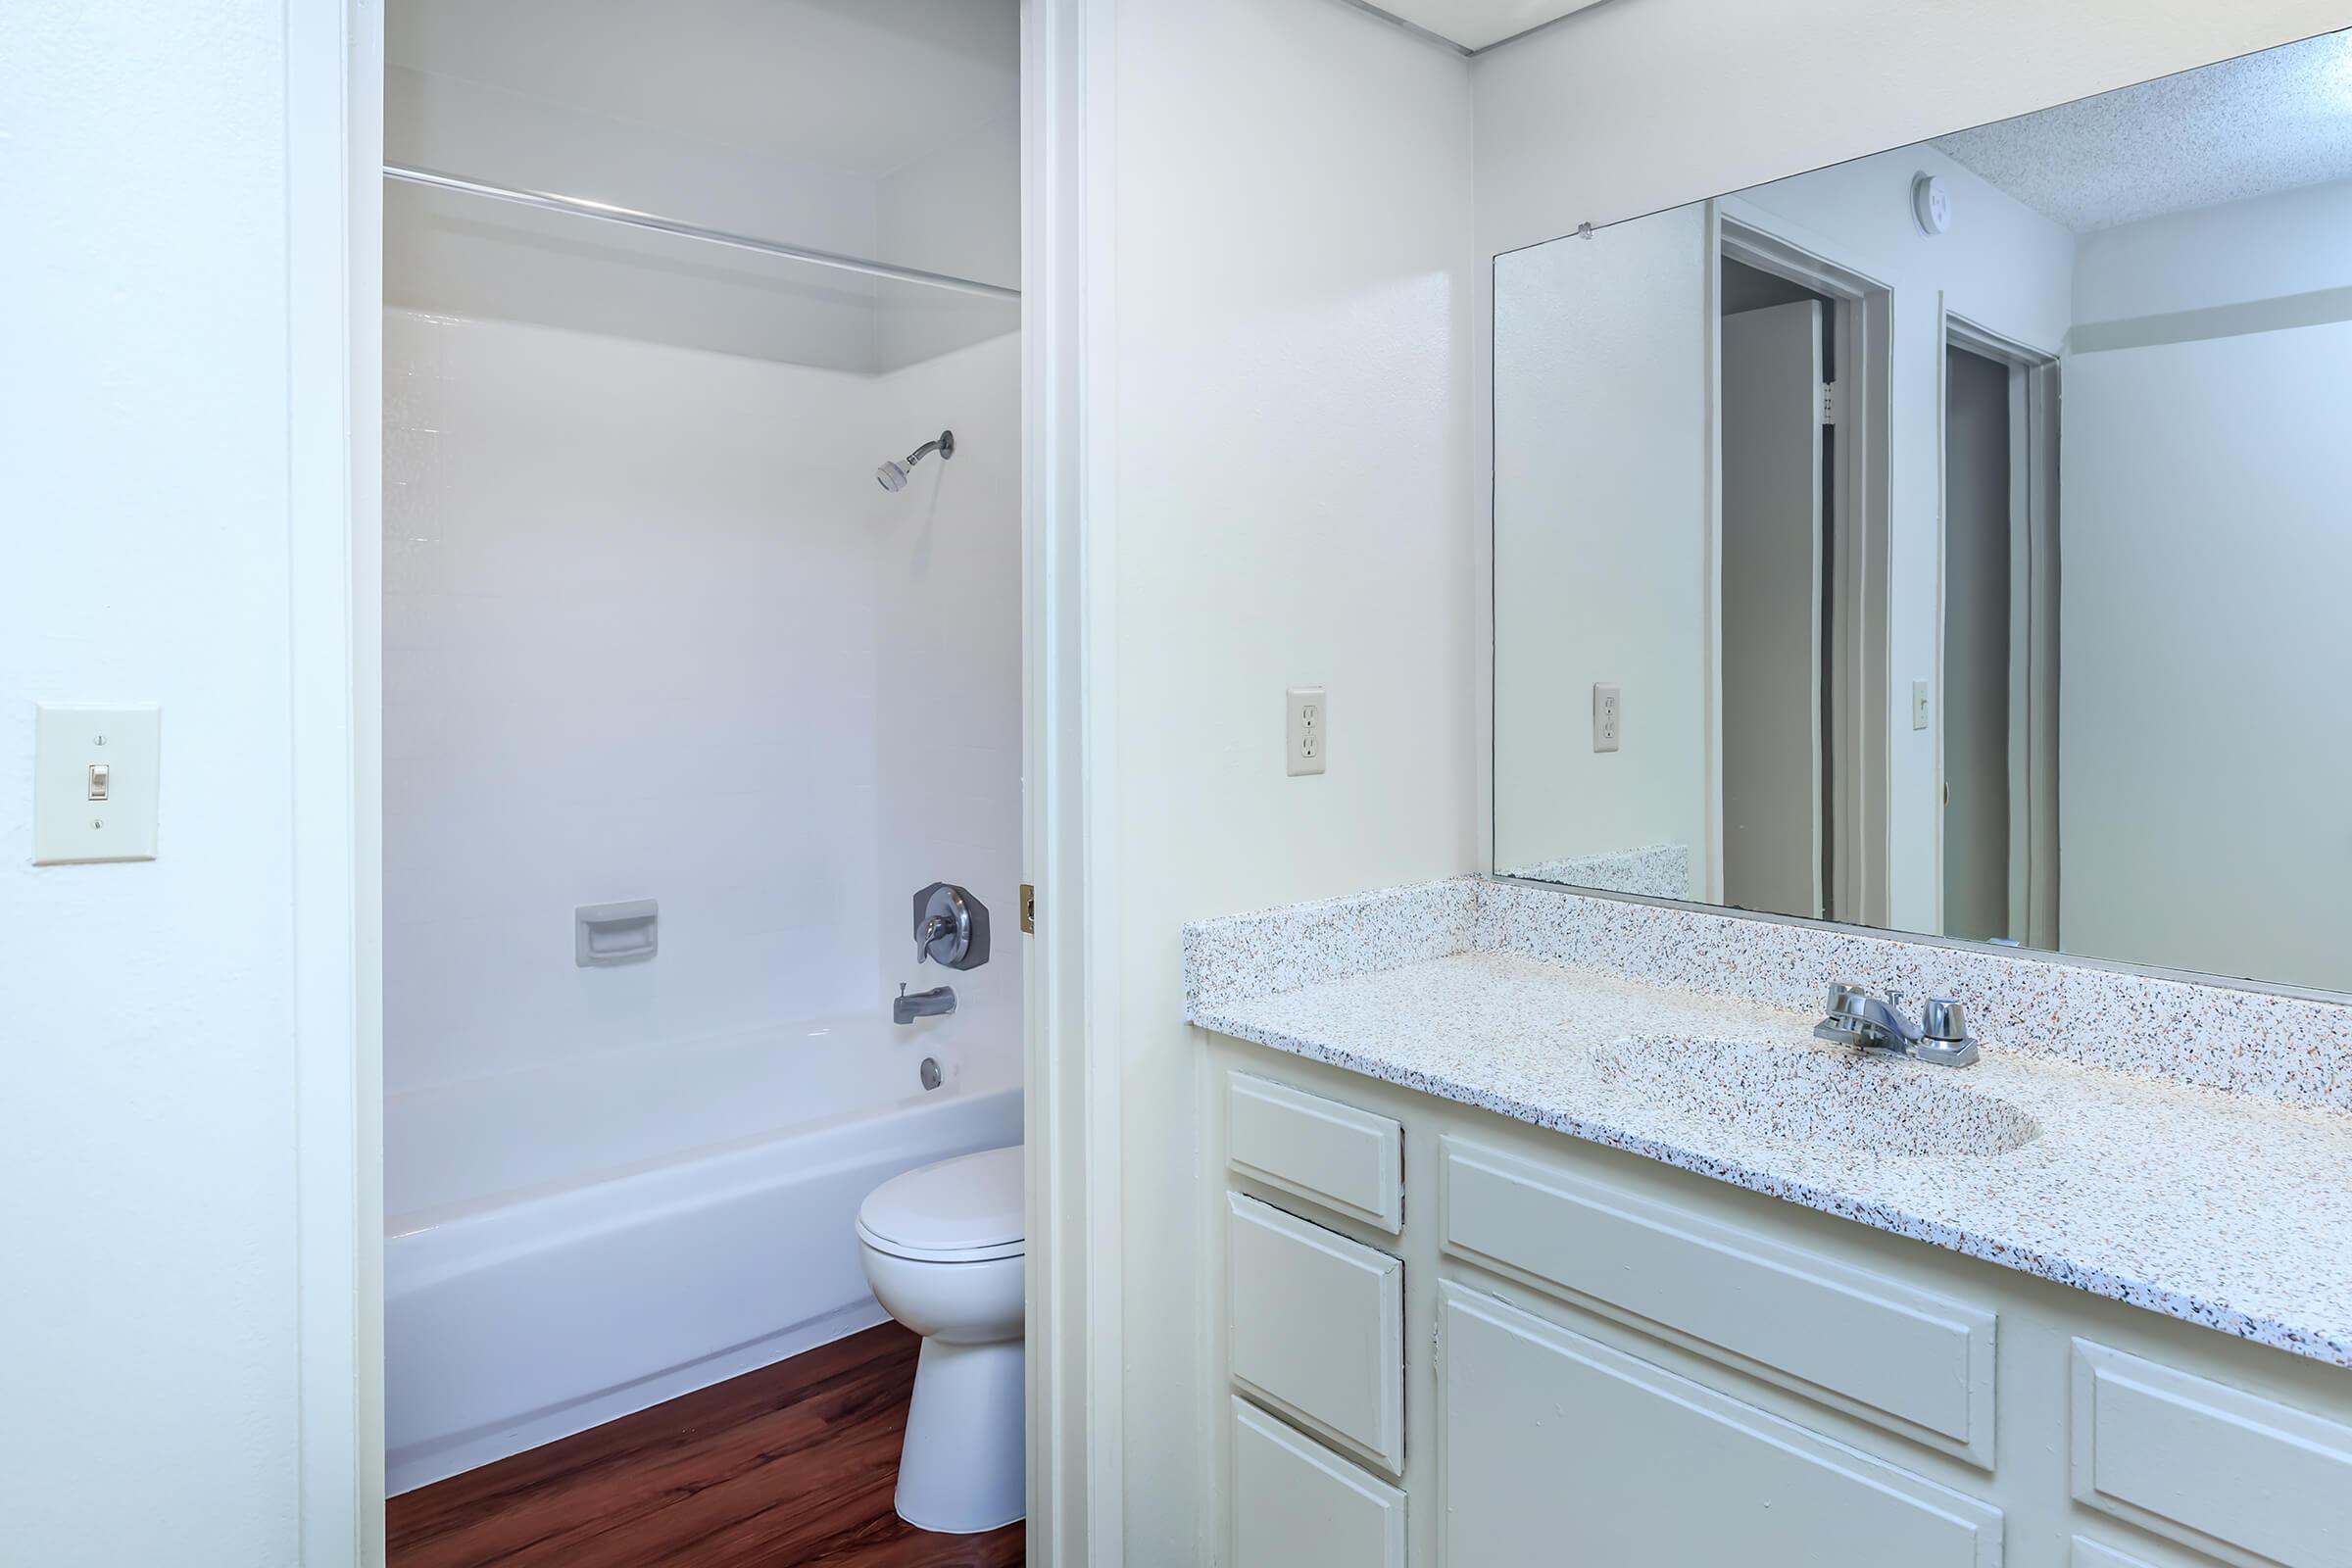 Bathroom sink and mirror with open bathroom door